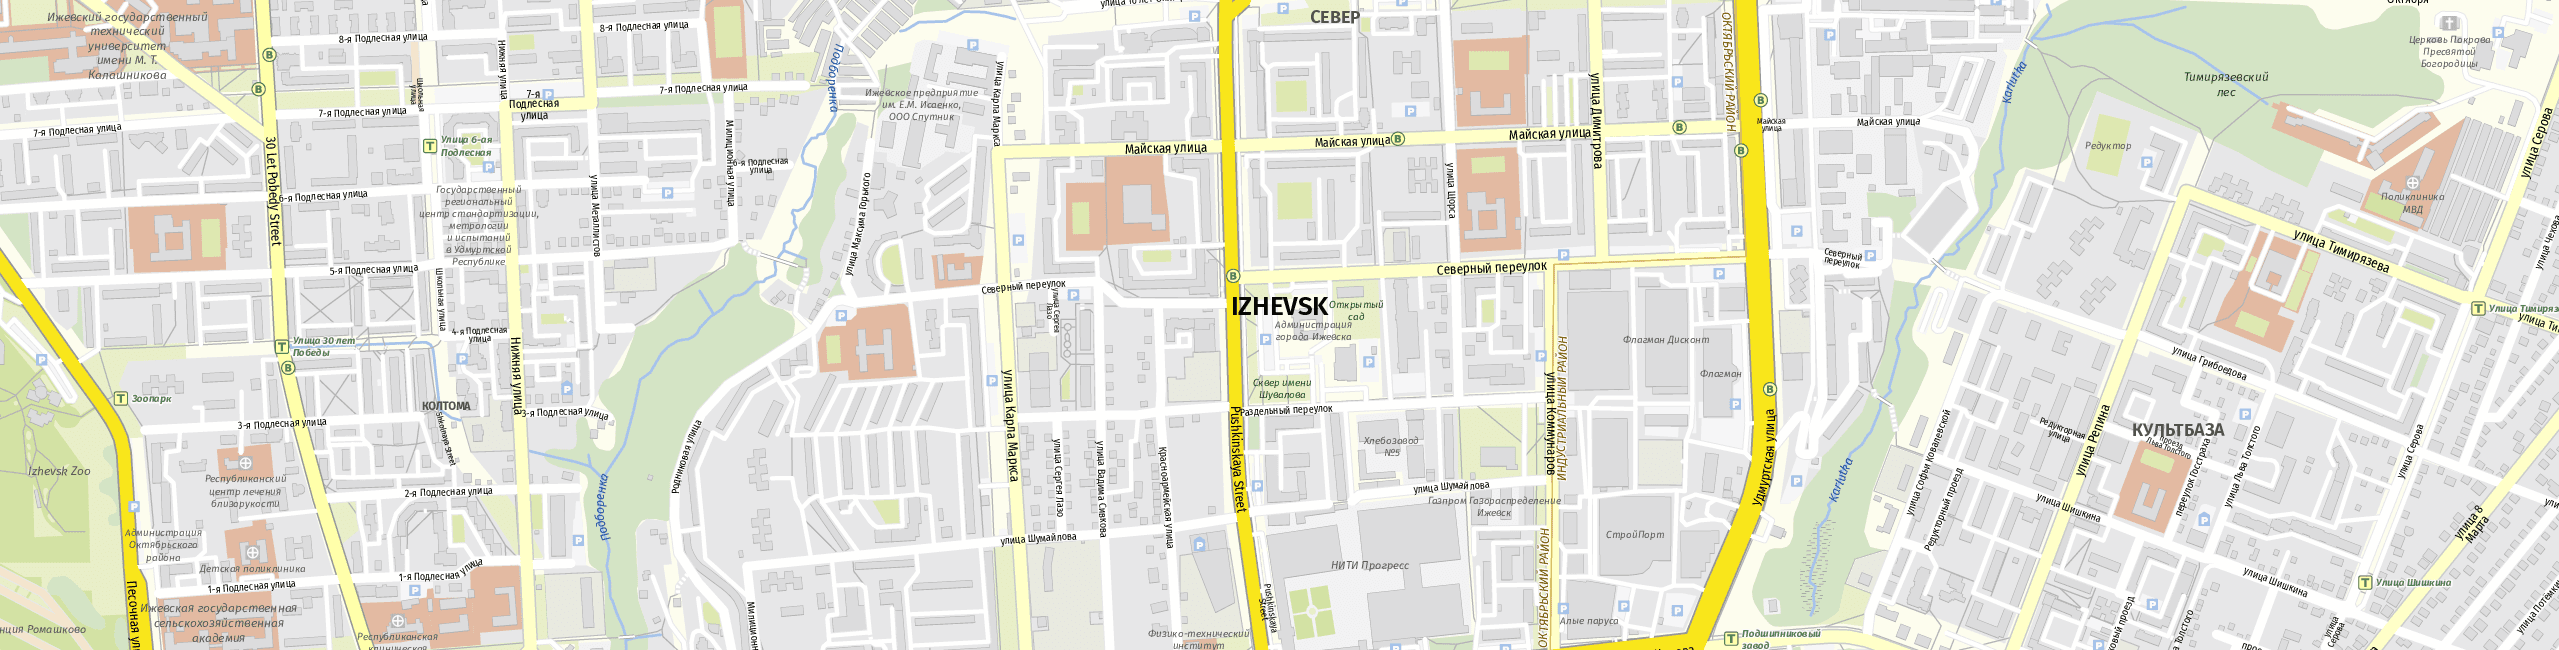 Stadtplan Ischewsk zum Downloaden.